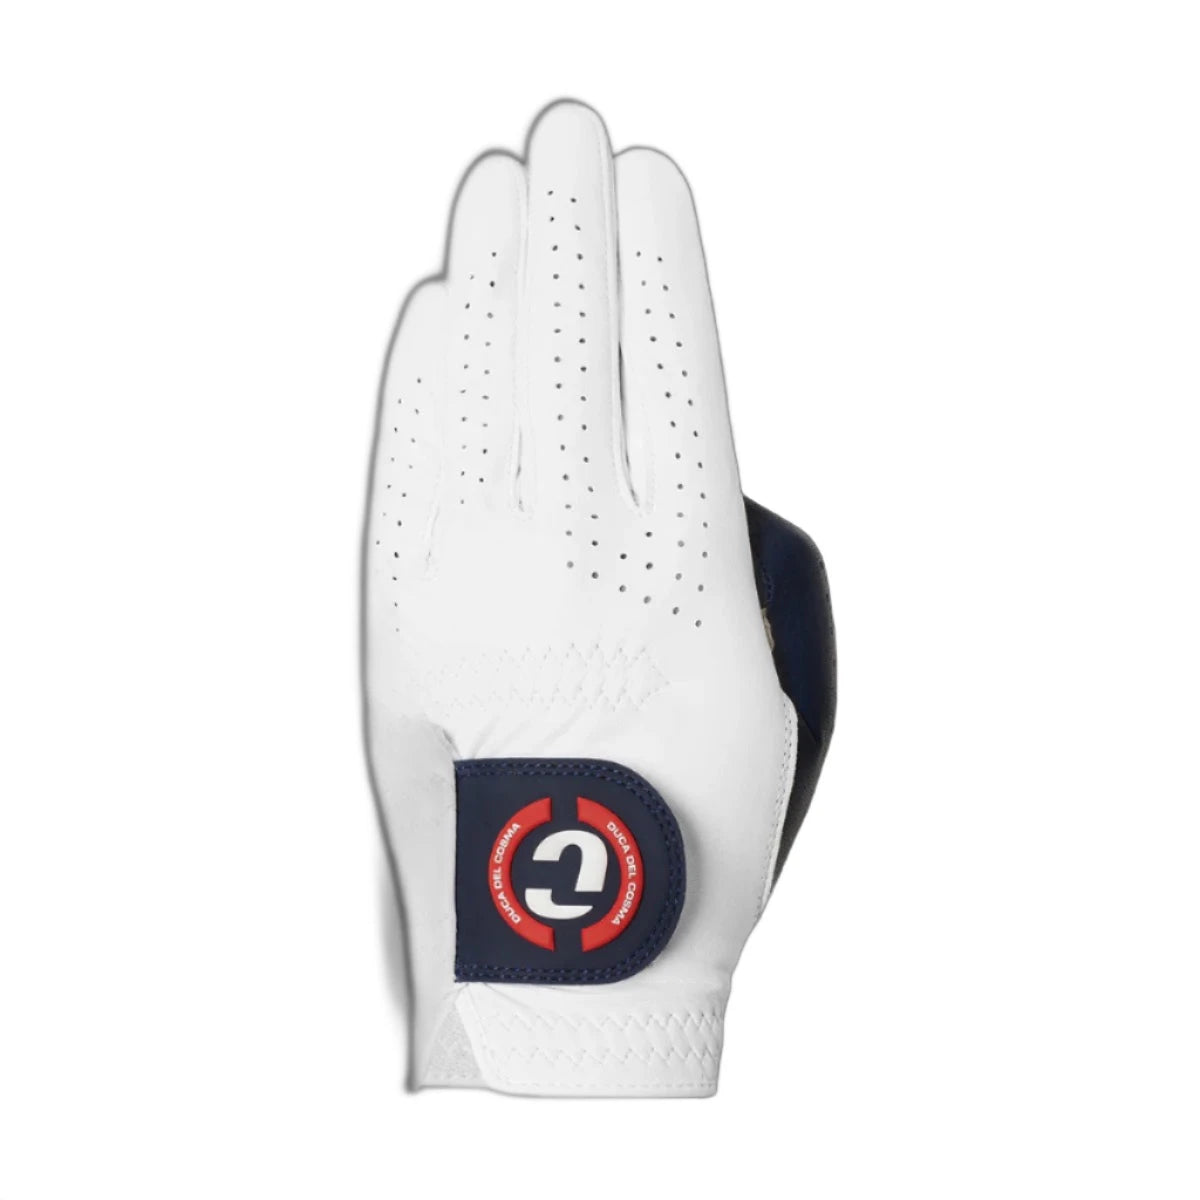 Elite Pro Sentosa Cabretta Glove